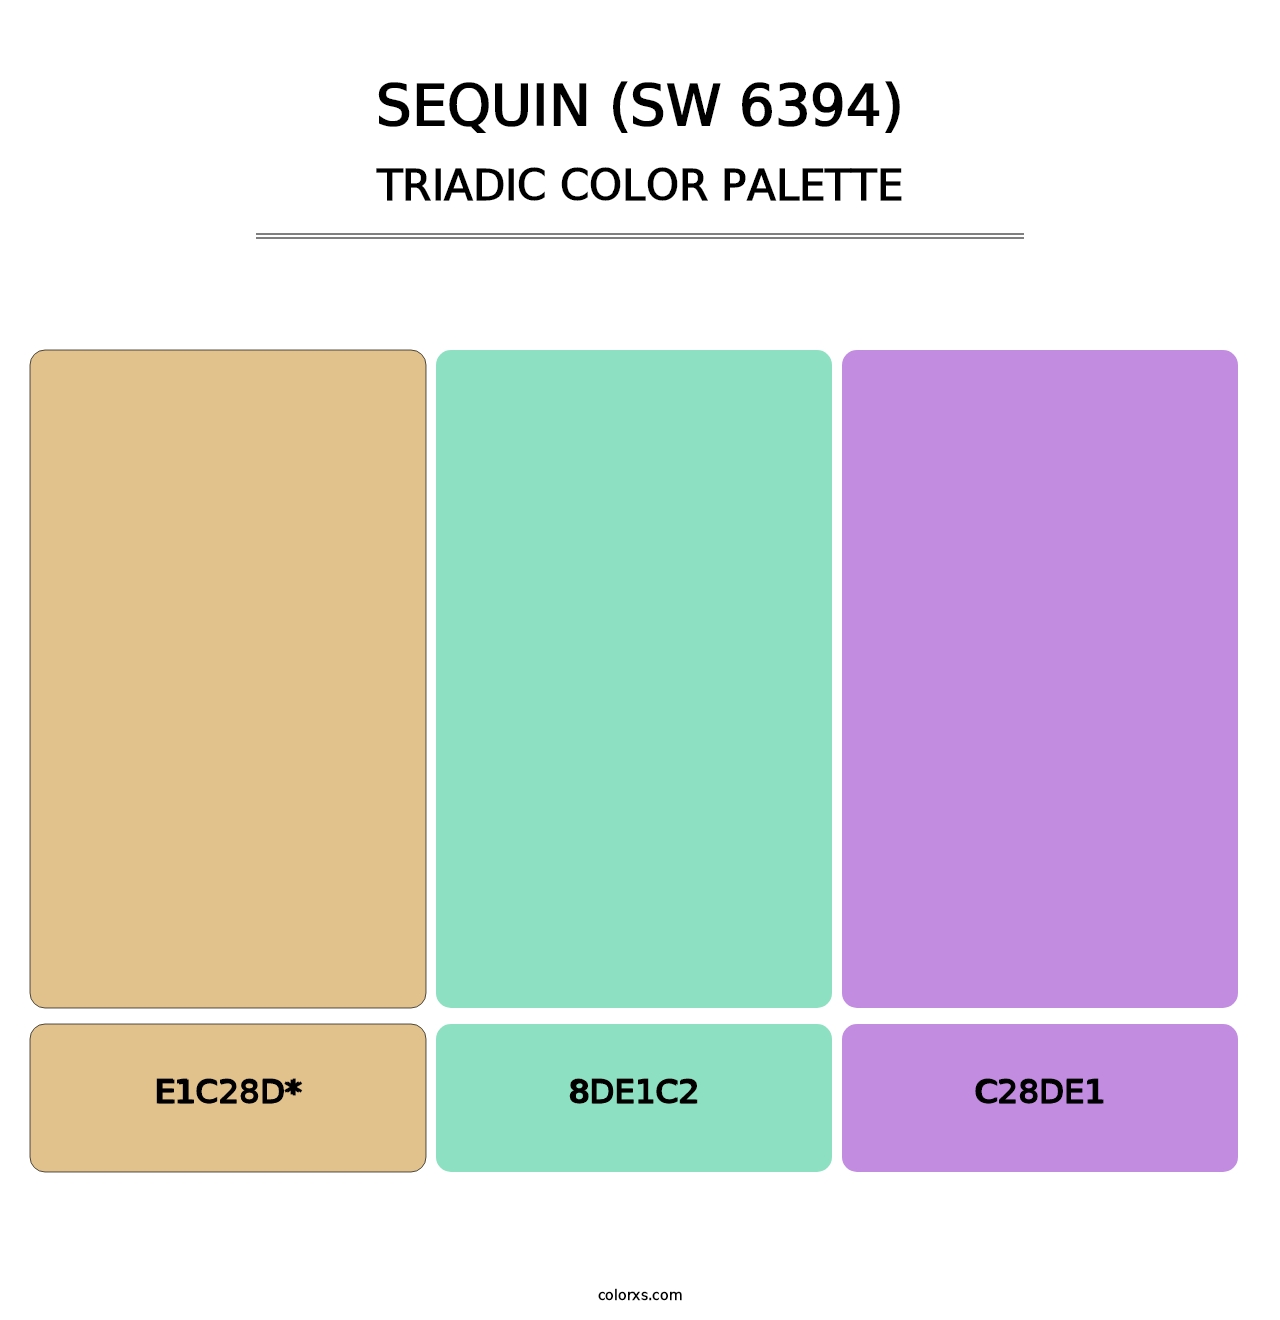 Sequin (SW 6394) - Triadic Color Palette